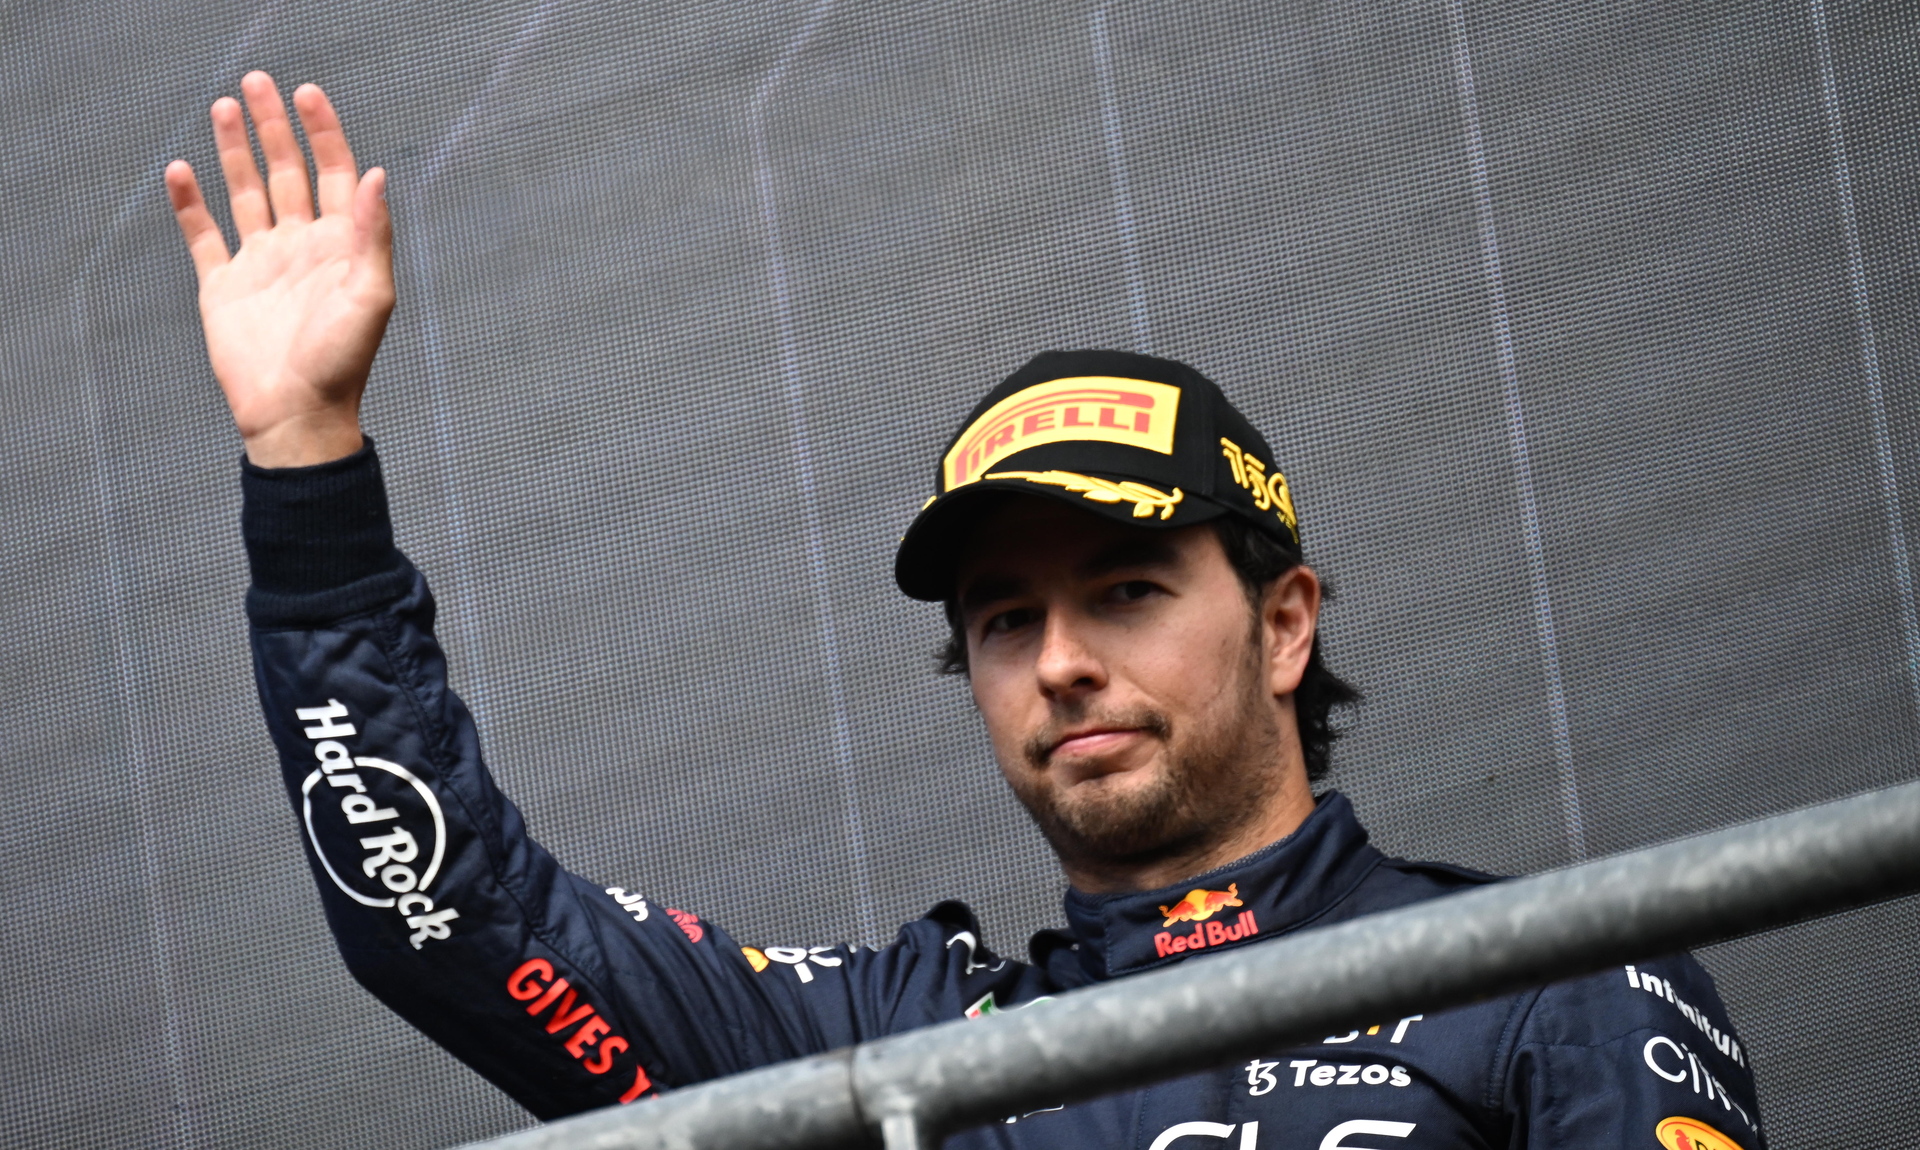 ¿Realmente 'Checo' Pérez tiene posibilidades de ganar el campeonato de Fórmula Uno 2022?